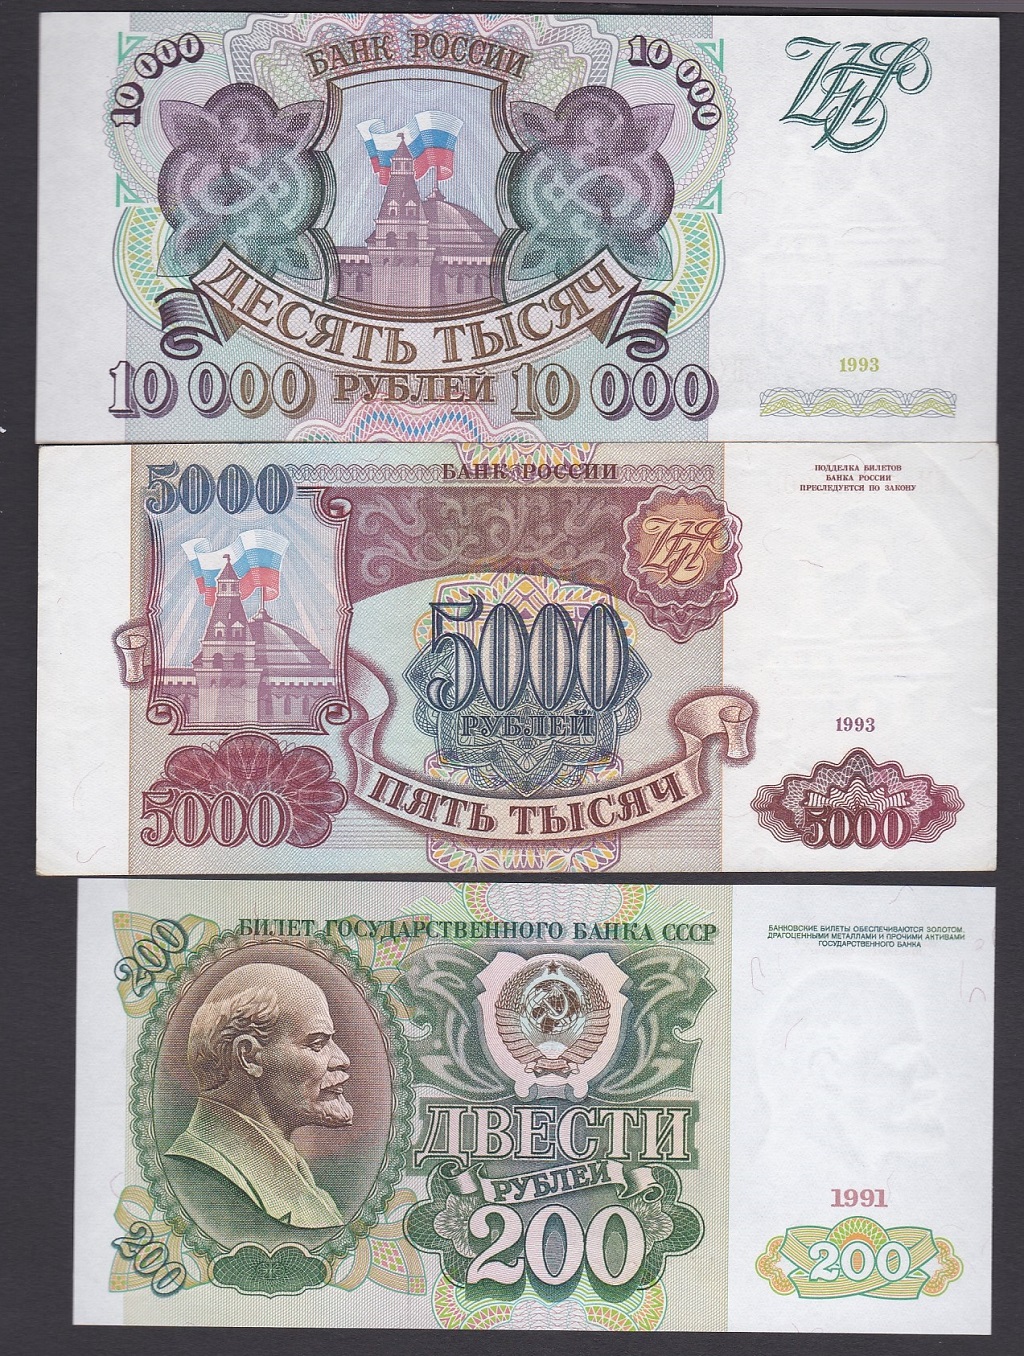 Russia 1991 200 Rubles, 1993 5000 Rubles, P258; 10,000 Rubles P259. All UNC